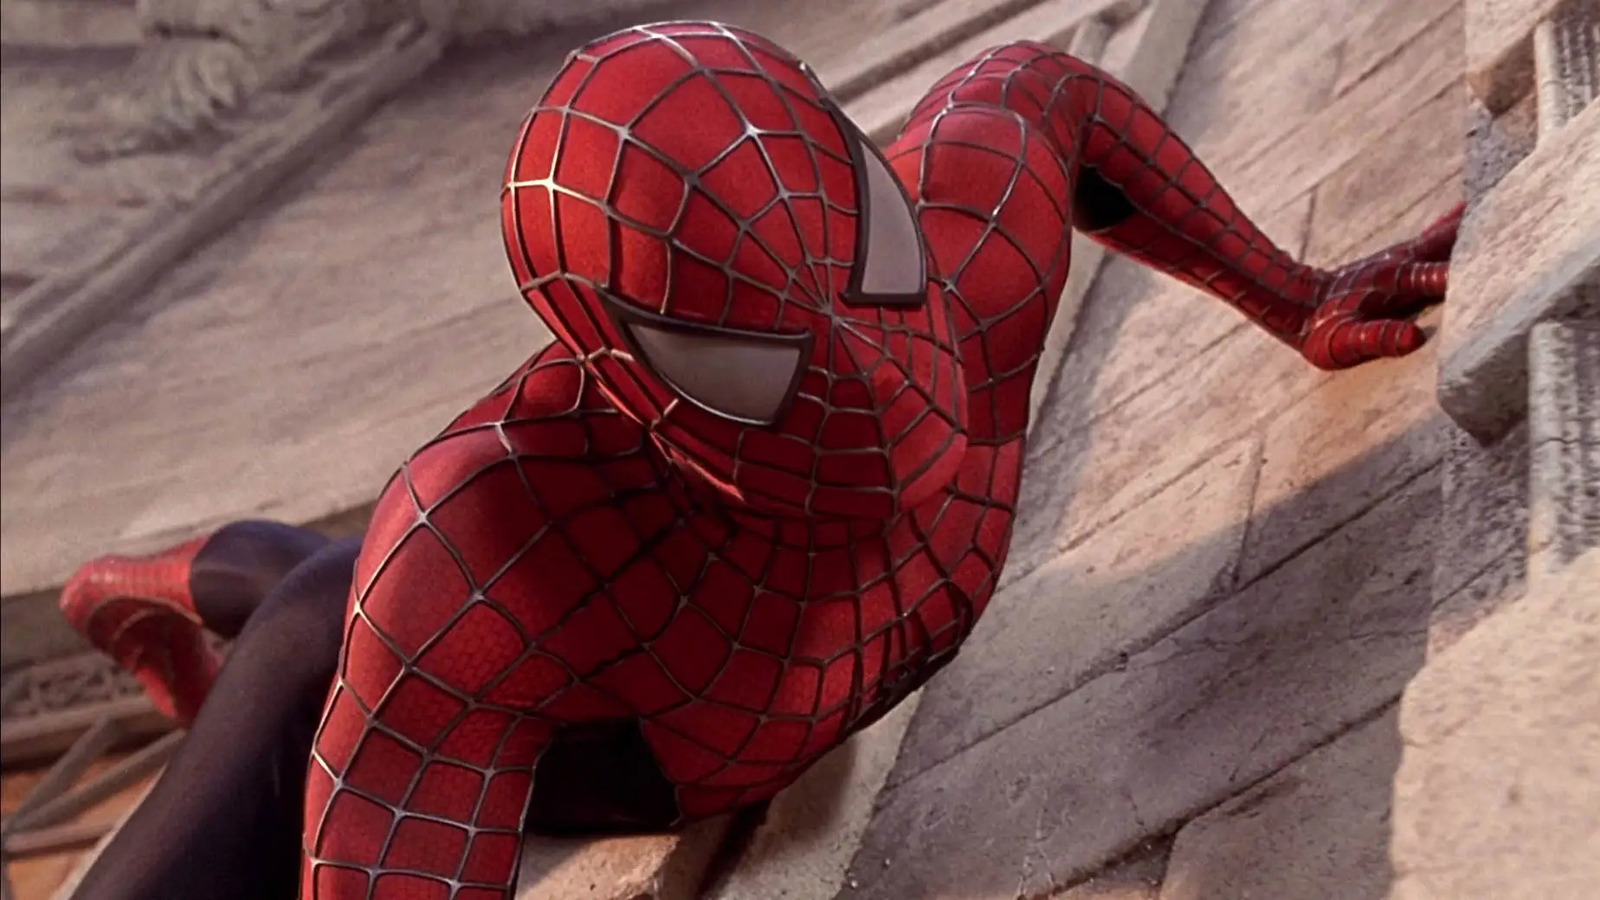 Джеймс Кэмерон планировал сыграть огромного злодея Marvel в своем фильме «Человек-паук с топором»